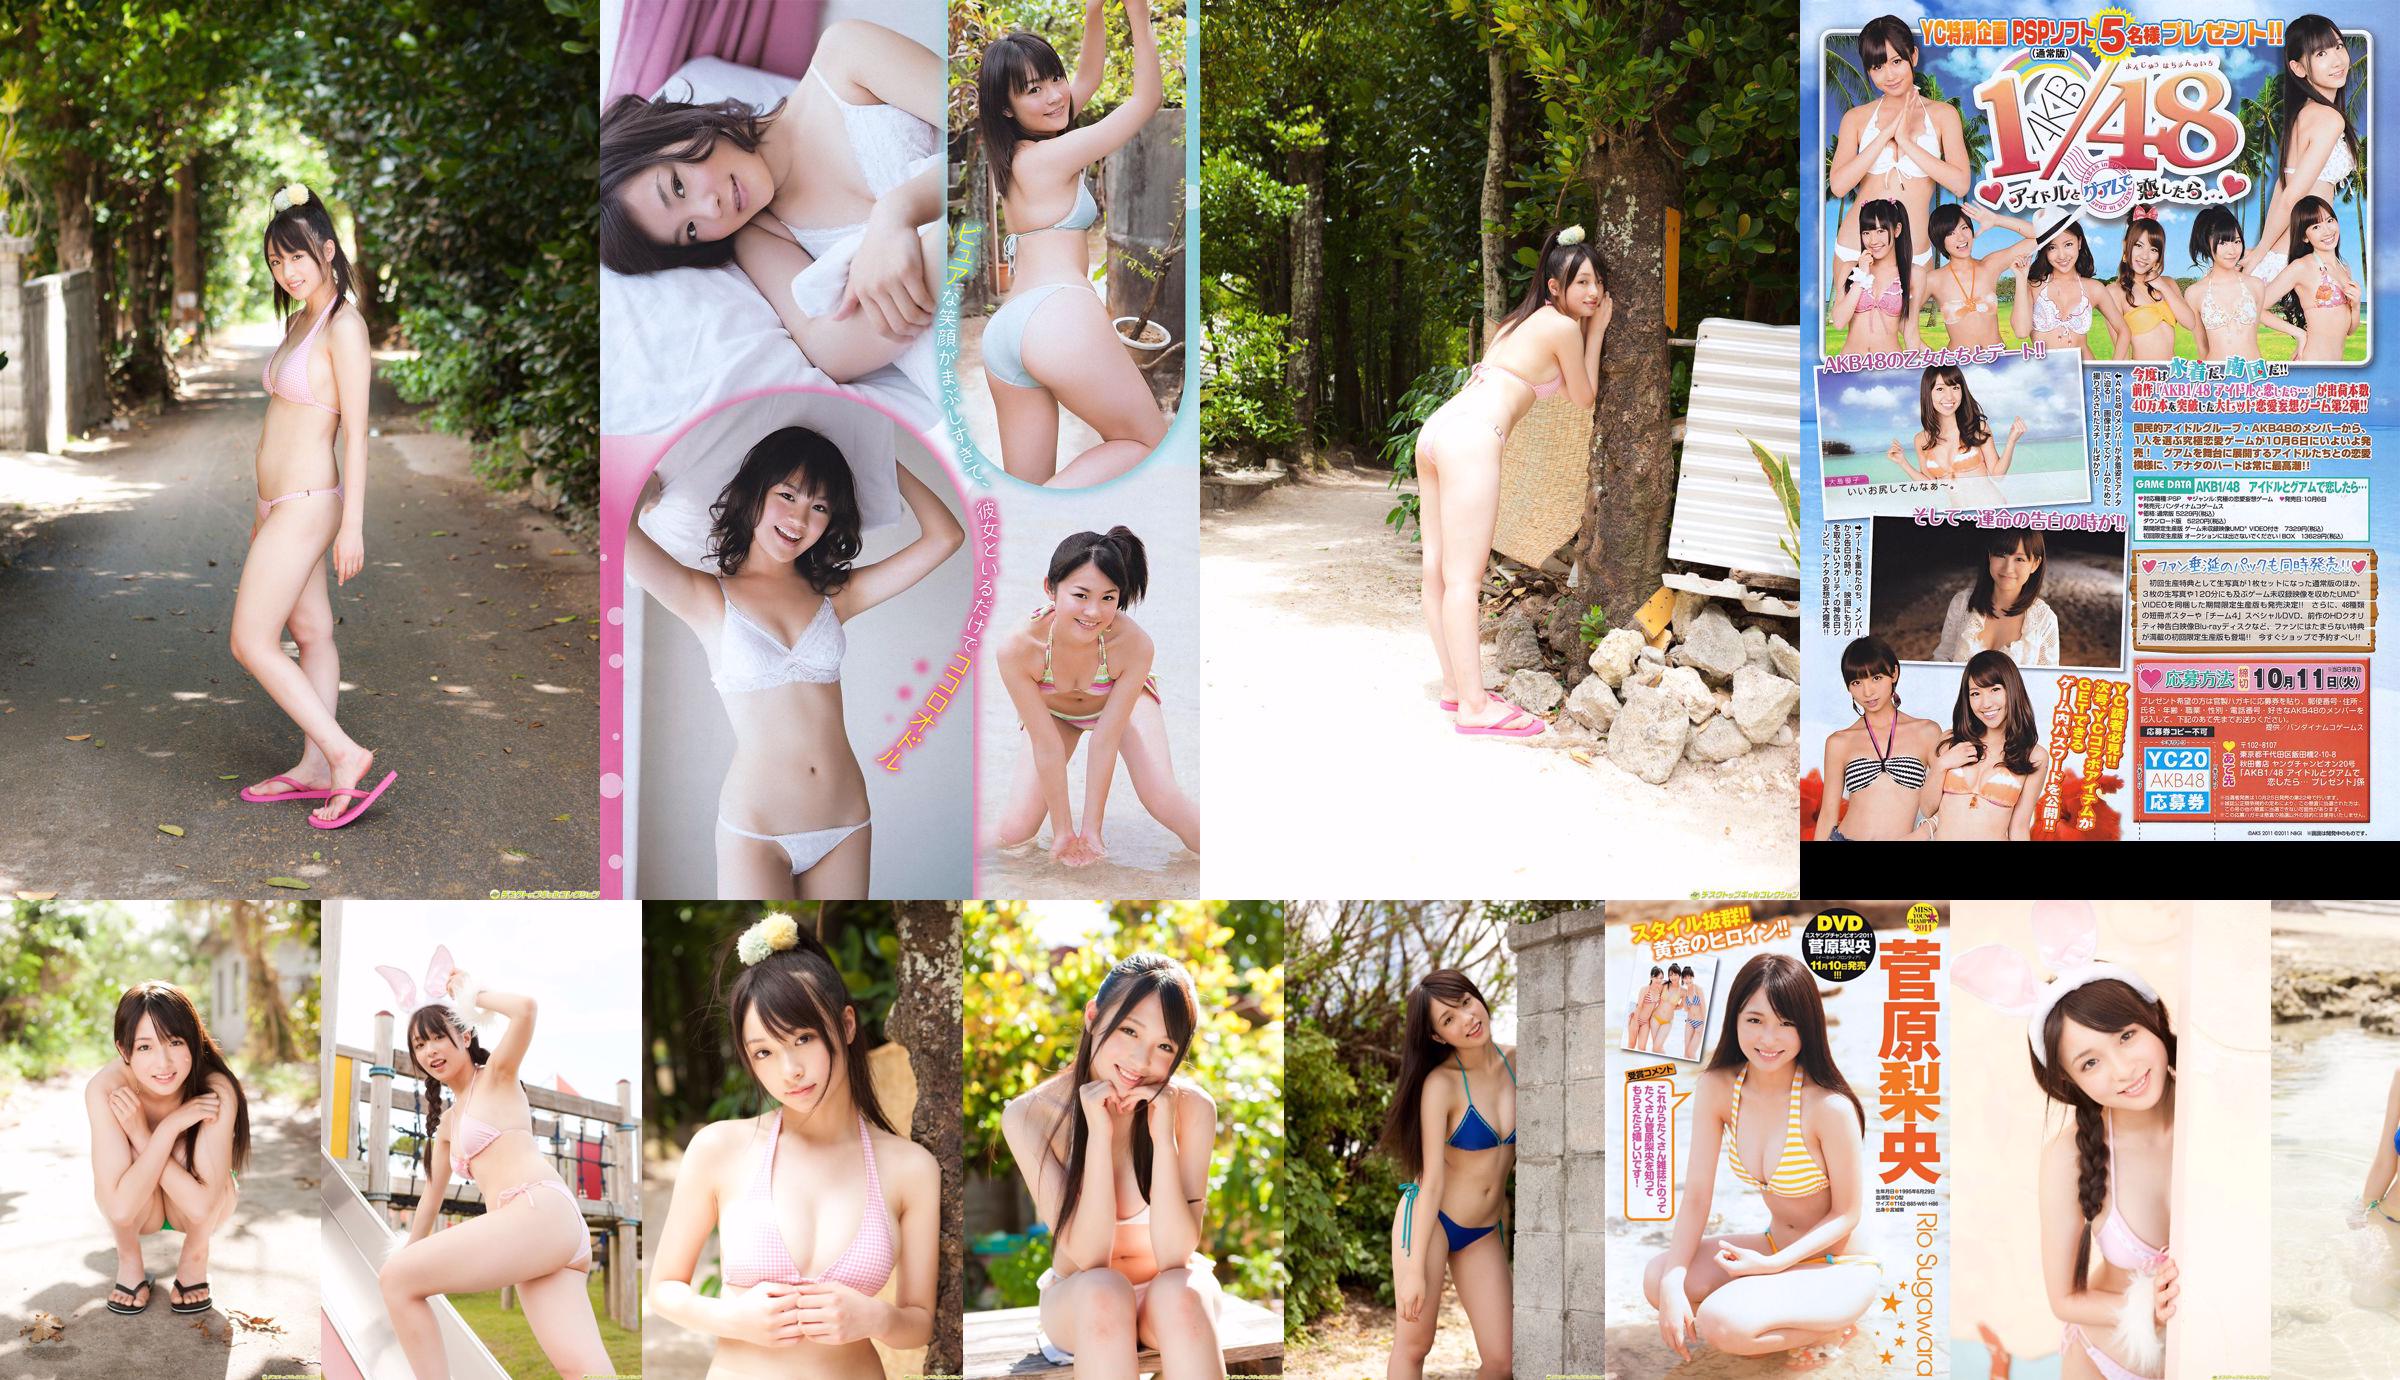 [Young Champion] Sugawara Risa, Horikawa Mikako, Matsushima no หรือ 2011 No. 20 Photo Magazine No.cb6d4f หน้า 1